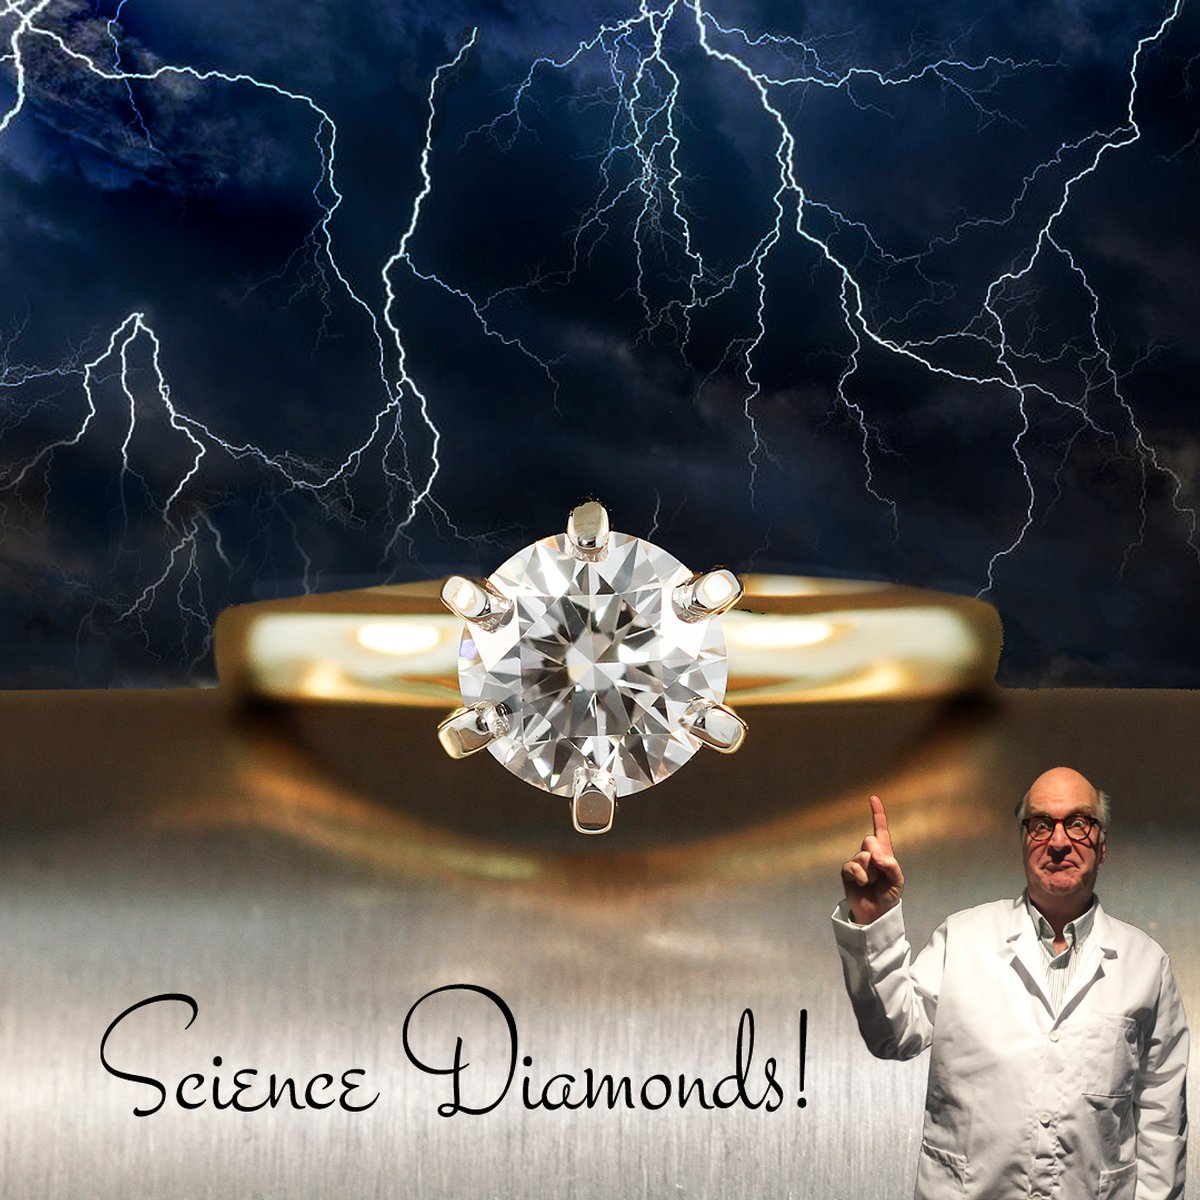 Science Diamonds!